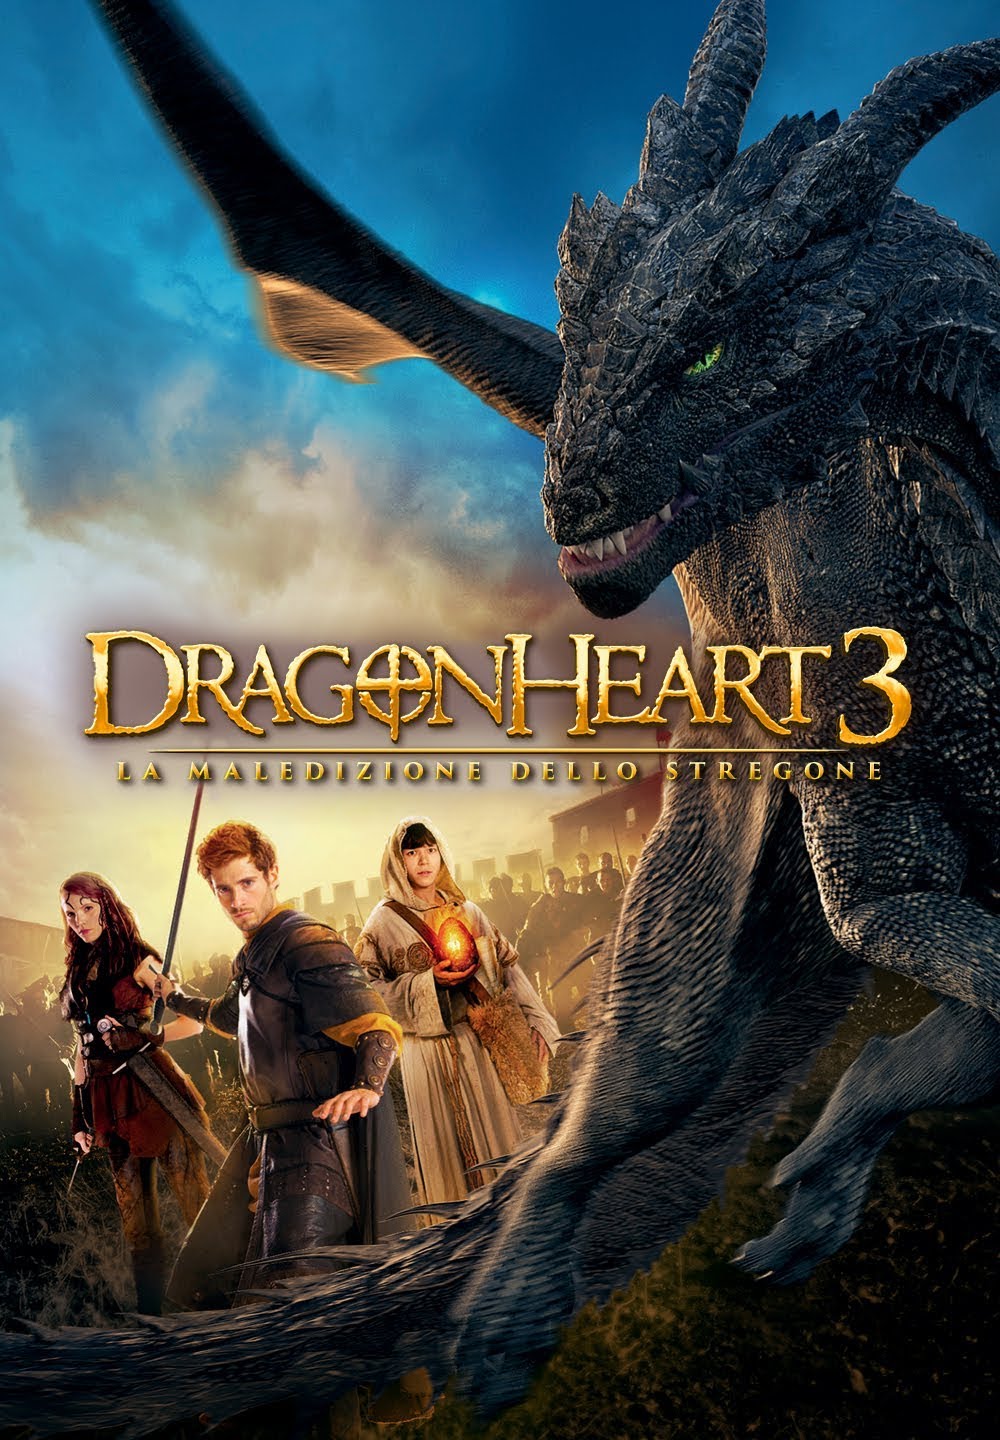 Dragonheart 3 – La maledizione dello stregone [HD] (2015)